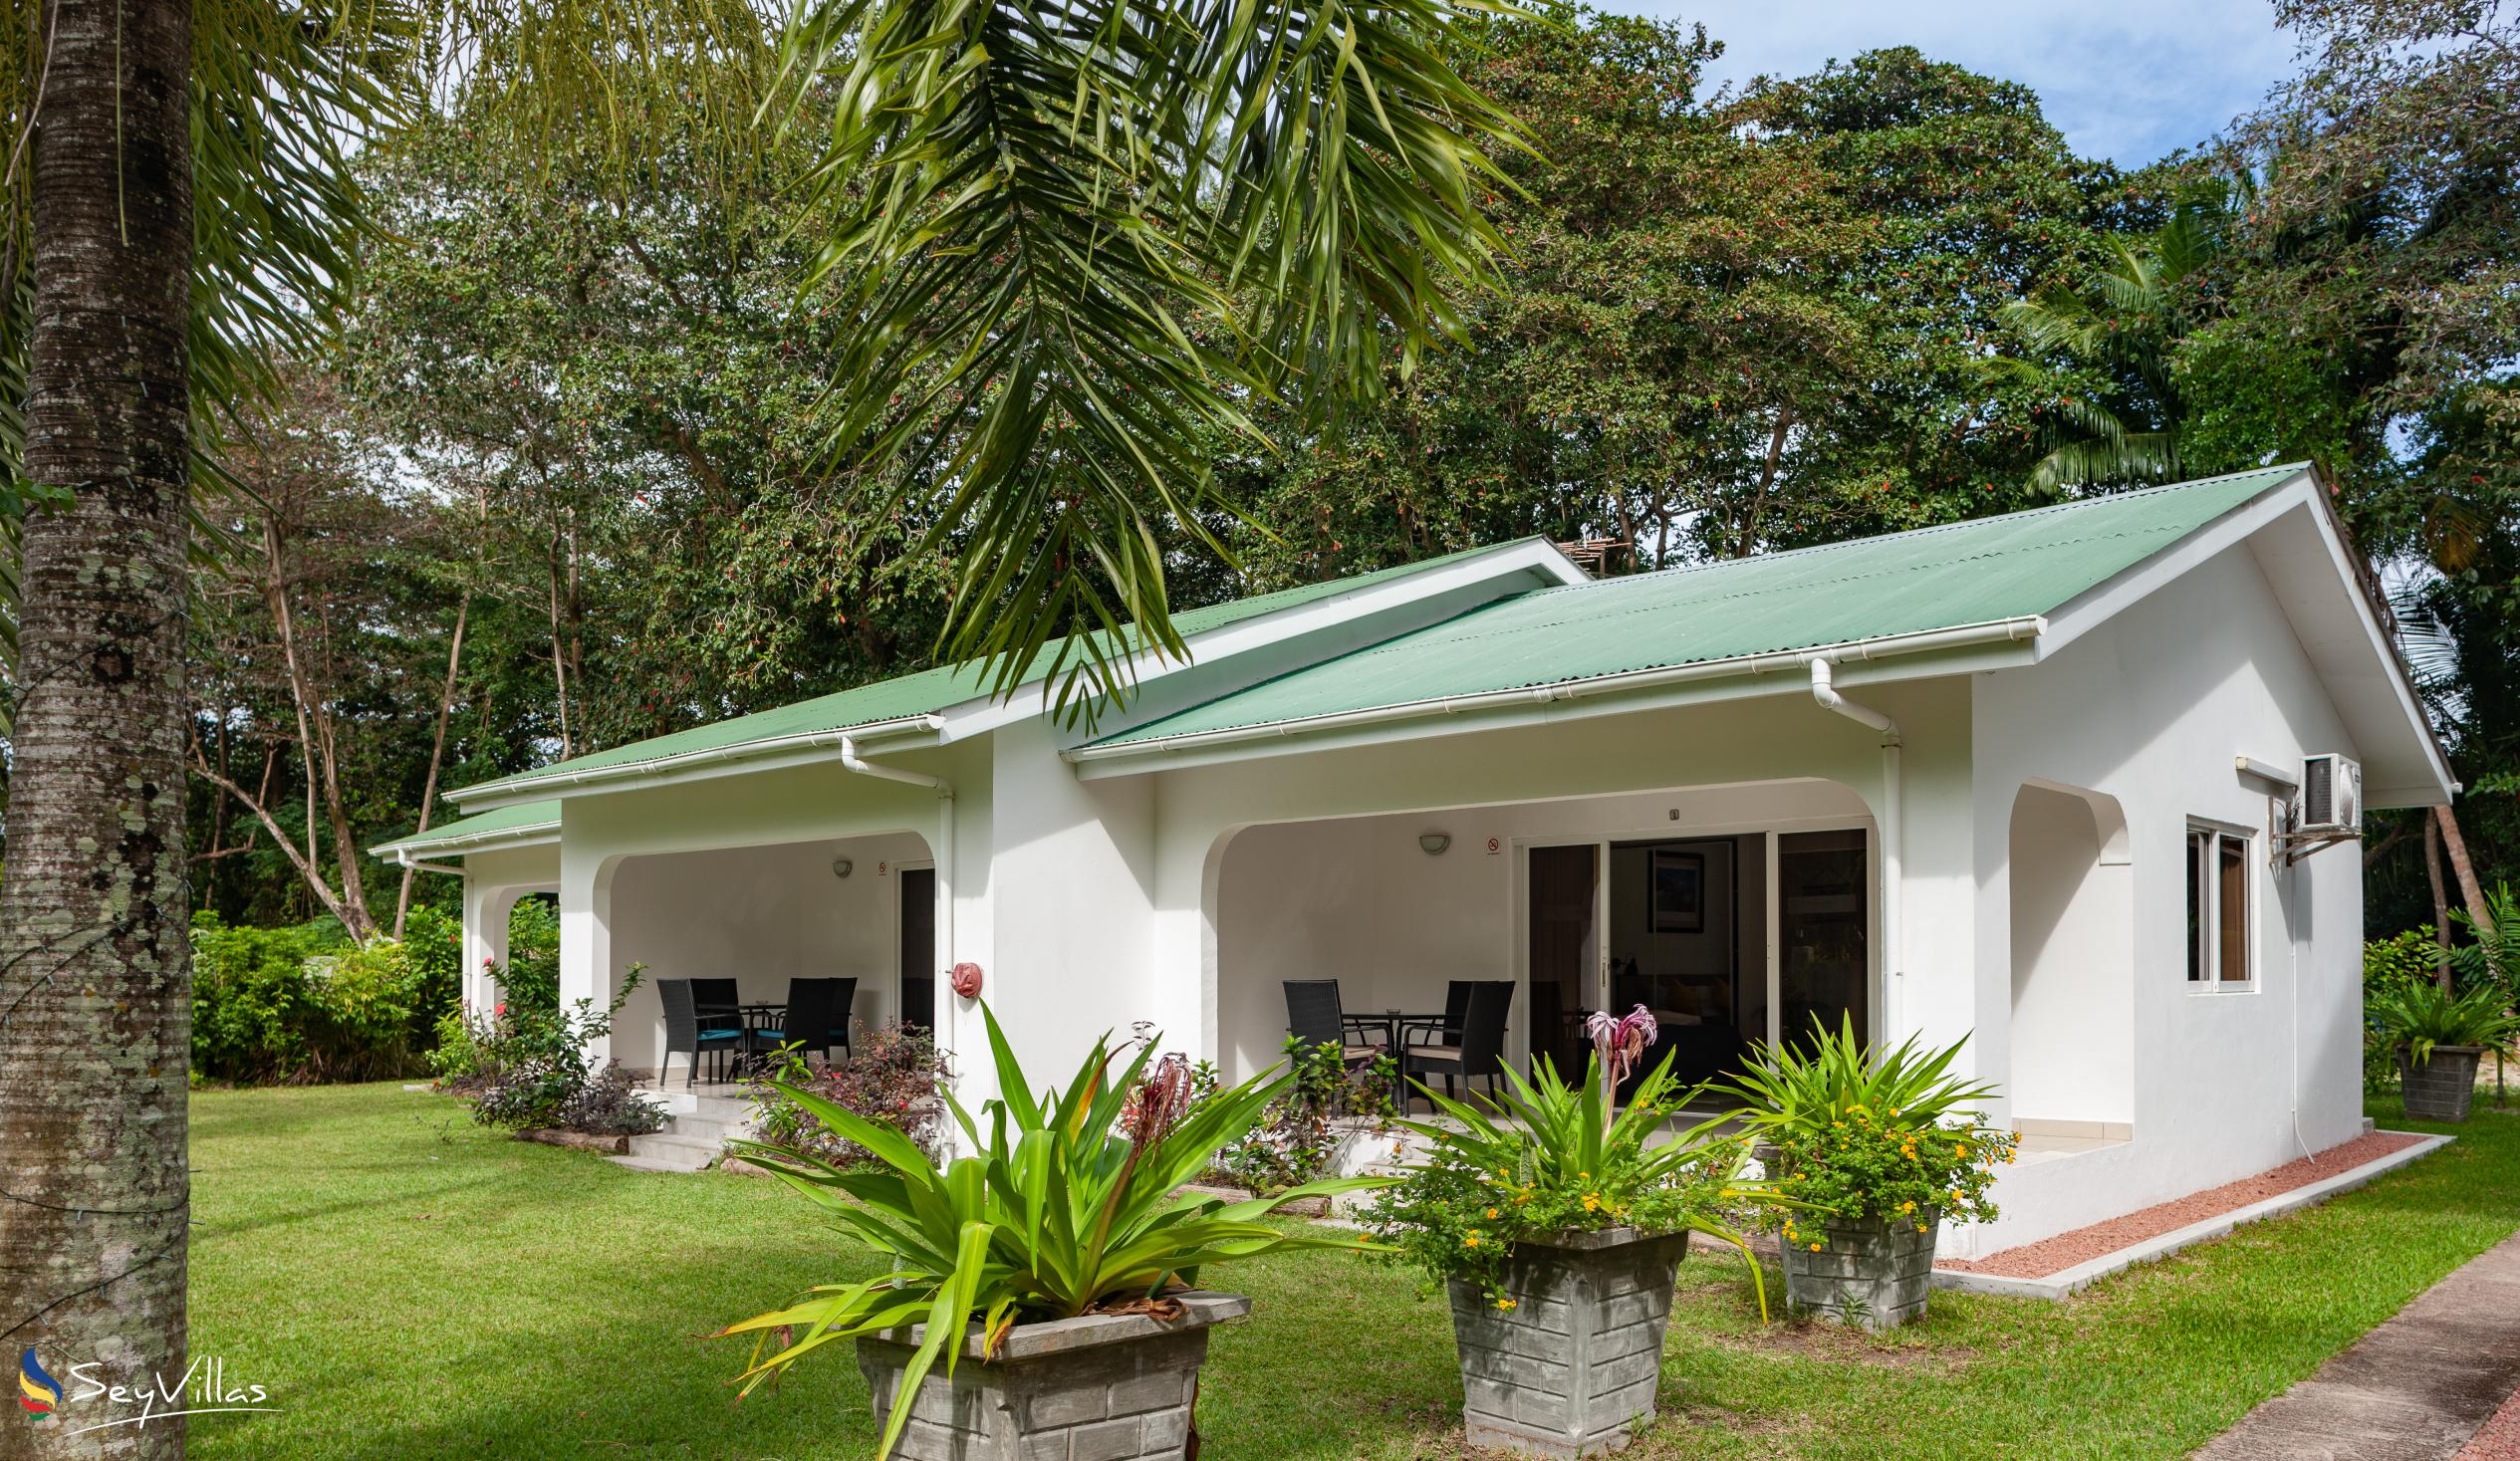 Foto 65: La Modestie Villa - Aussenbereich - Praslin (Seychellen)